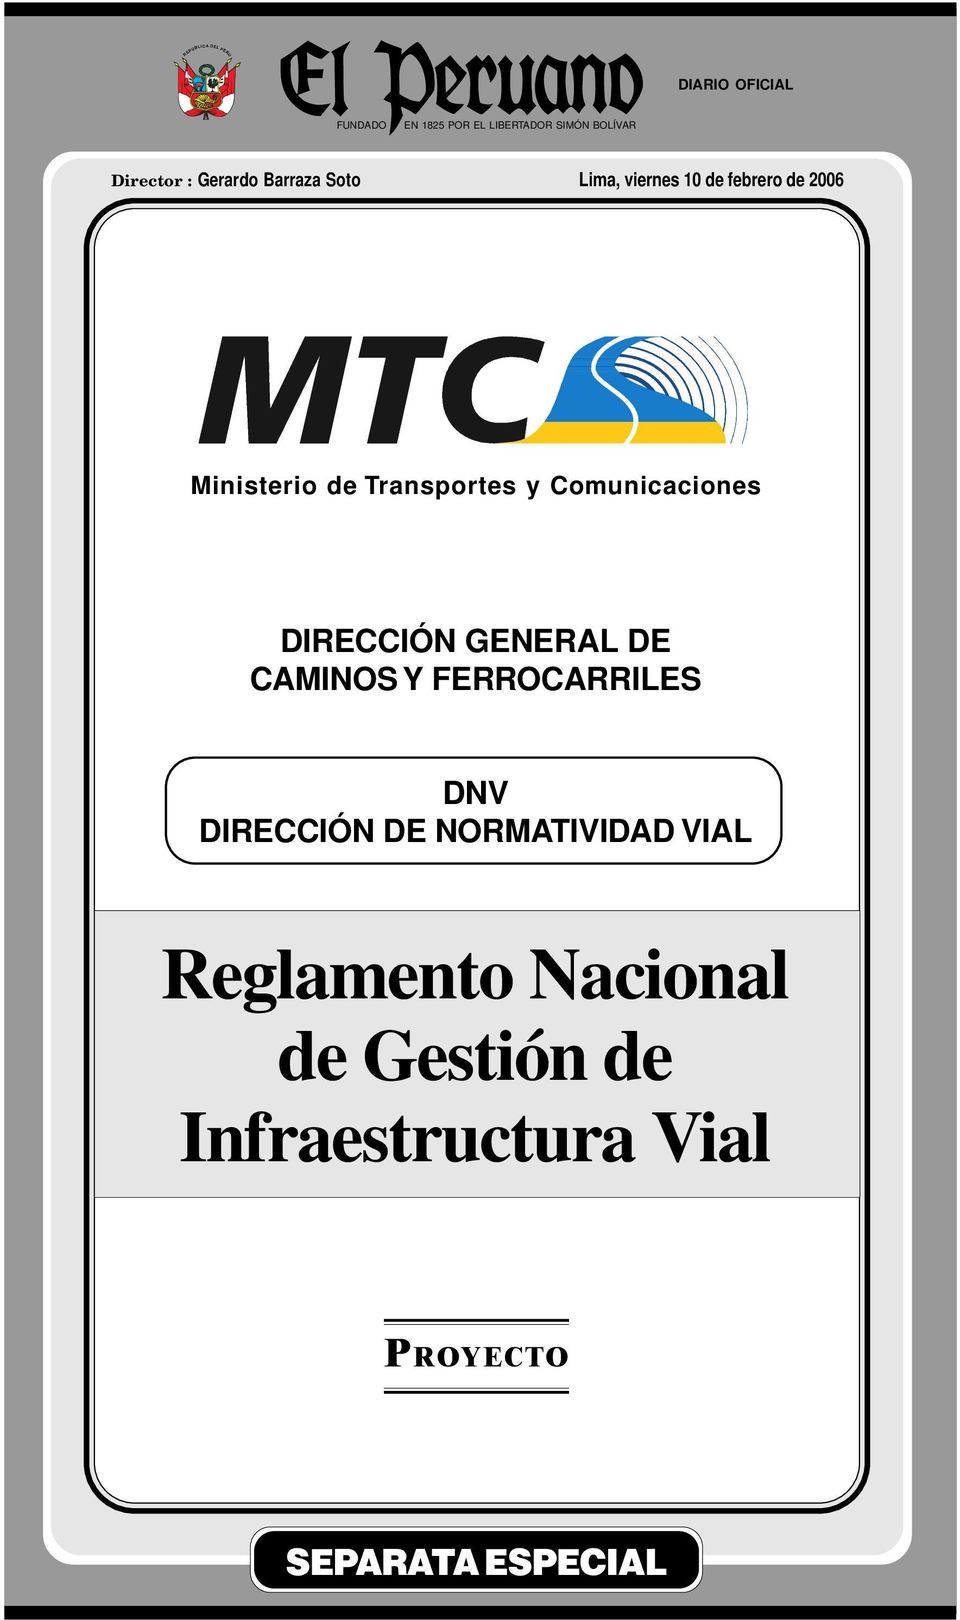 Lima, viernes 10 de febrero de 2006 Ministerio de Transportes y Comunicaciones DIRECCIÓN GENERAL